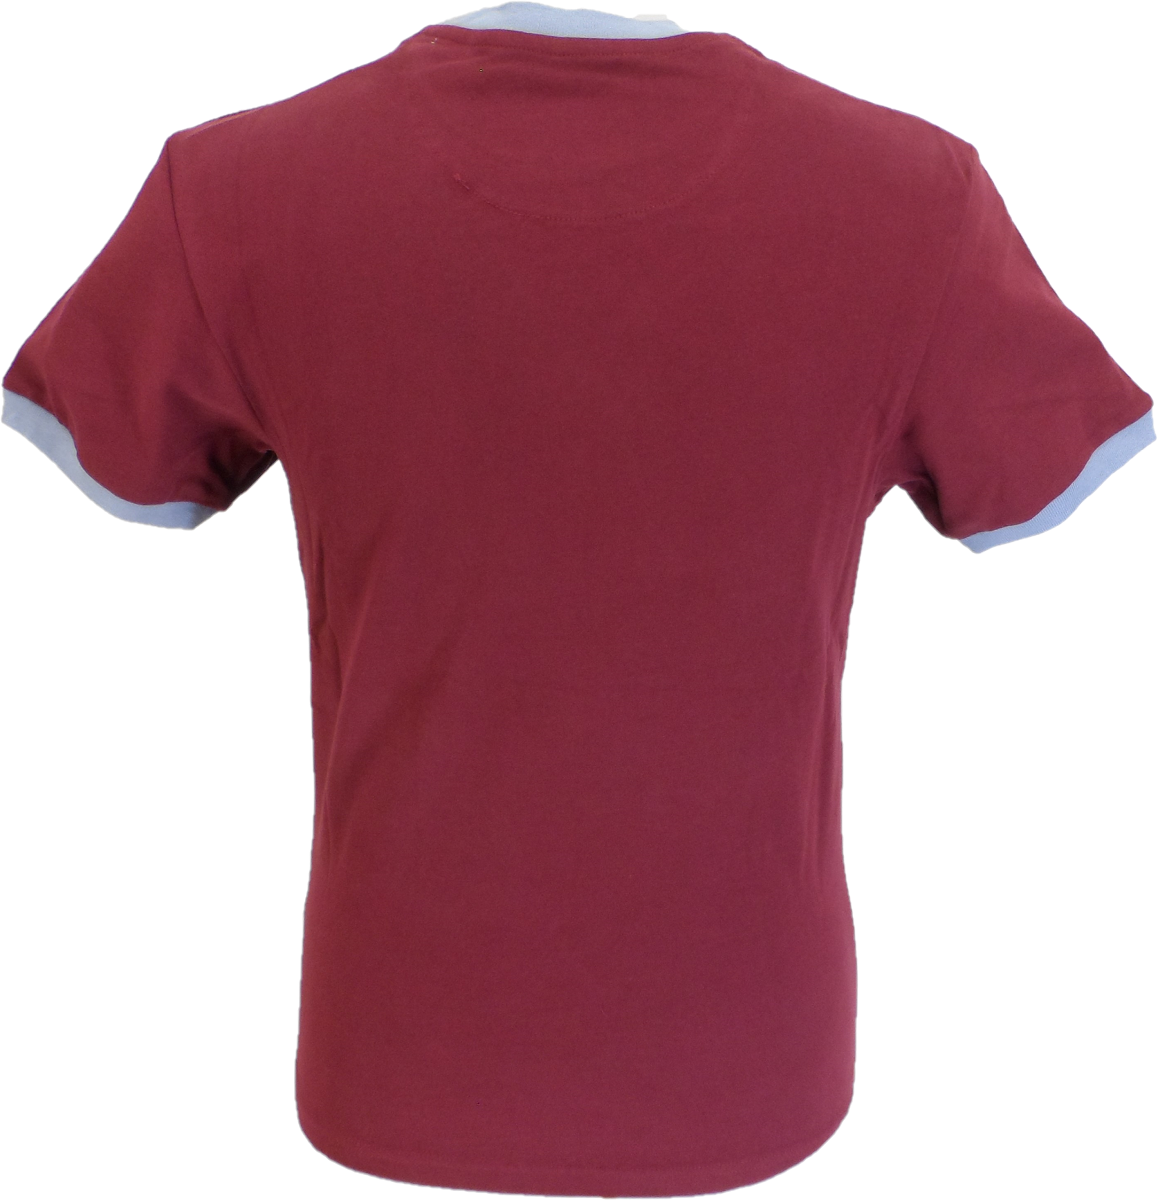 Trojan records port camiseta roja con logo de casco clásico 100% algodón